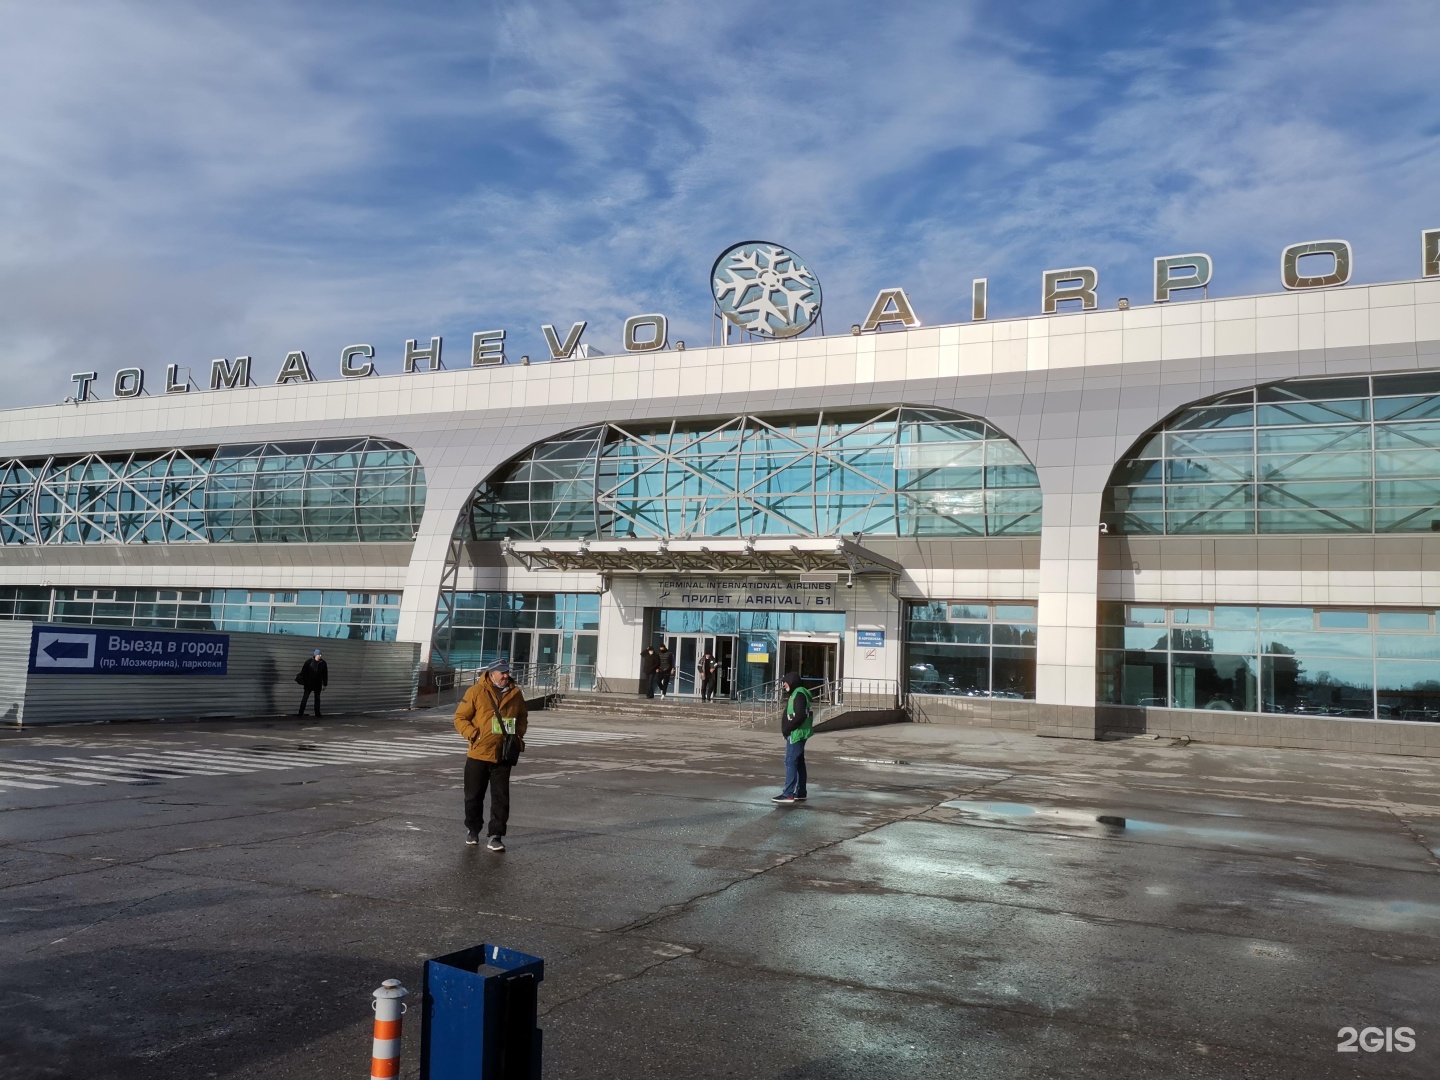 Аэропорт покрышкина новосибирск